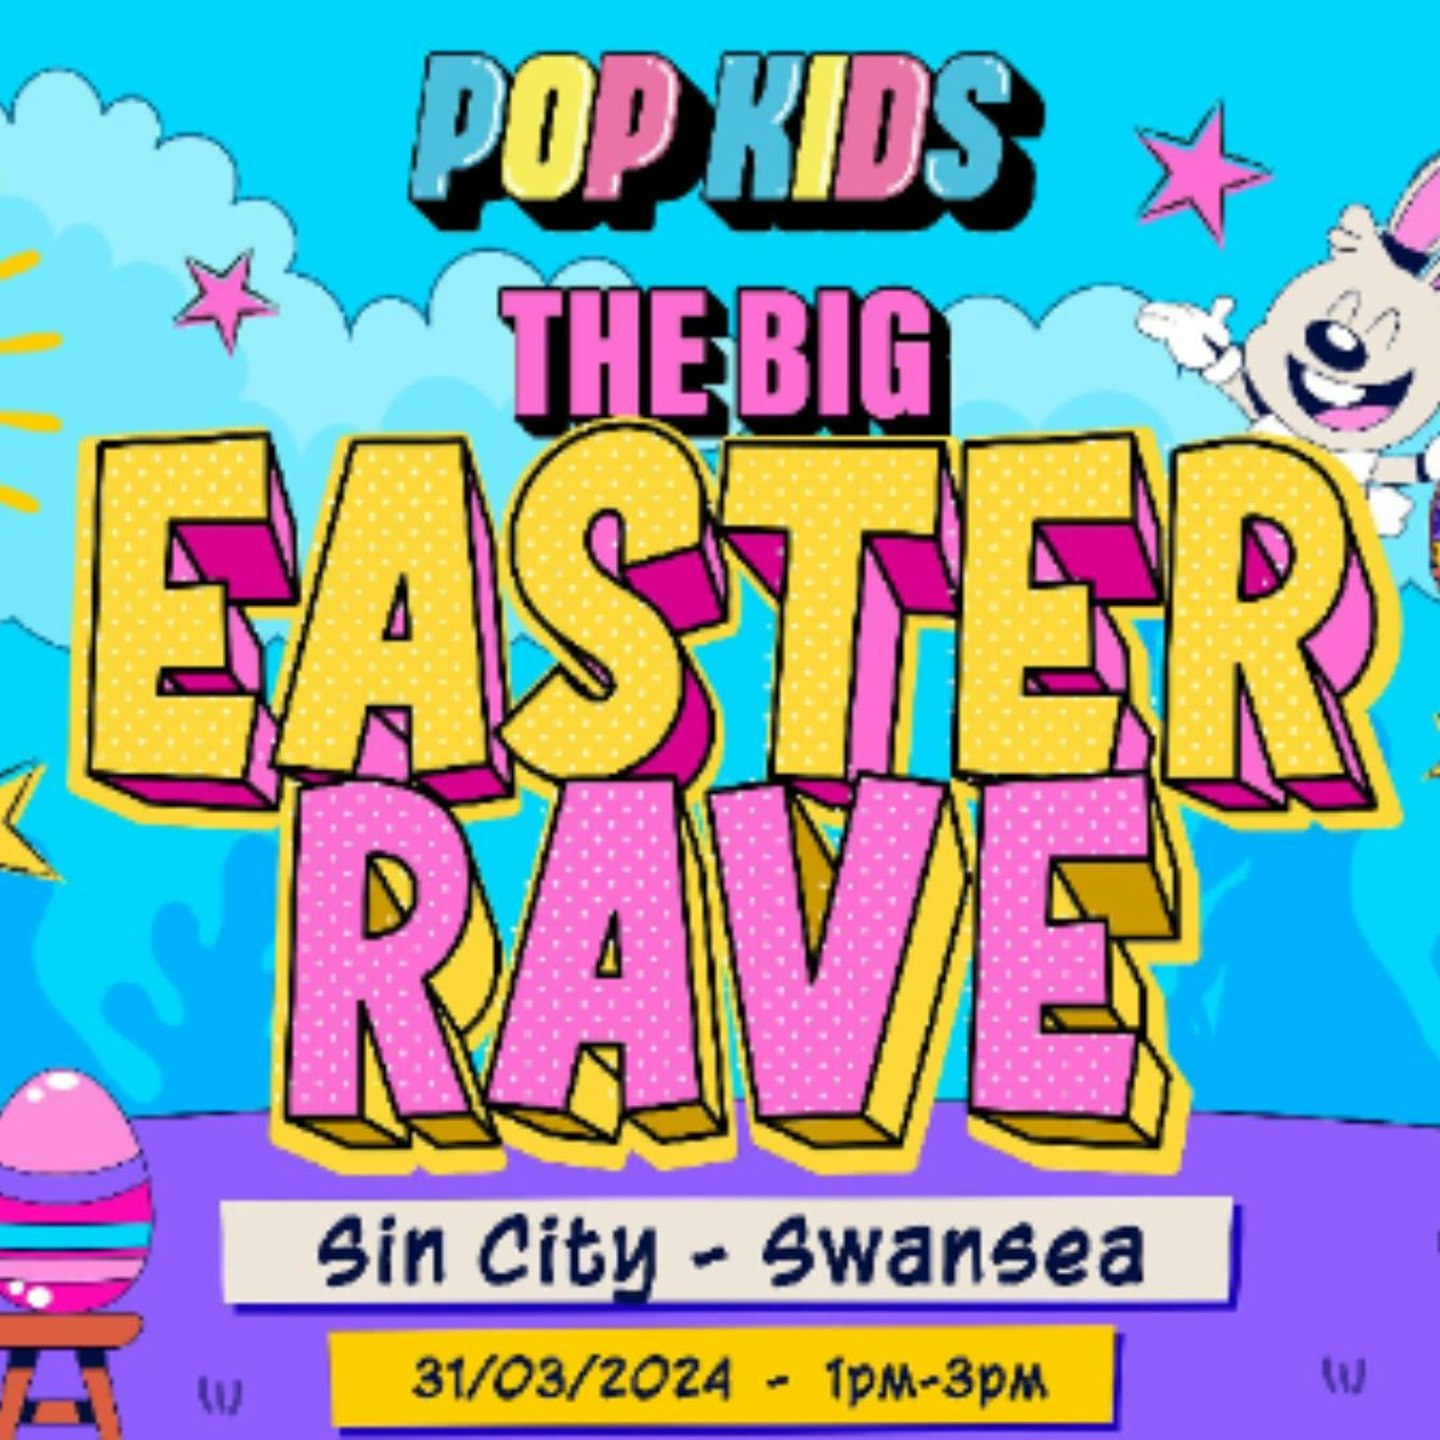 Rebel Presents Pop Kids Easter Rave (Swansea)